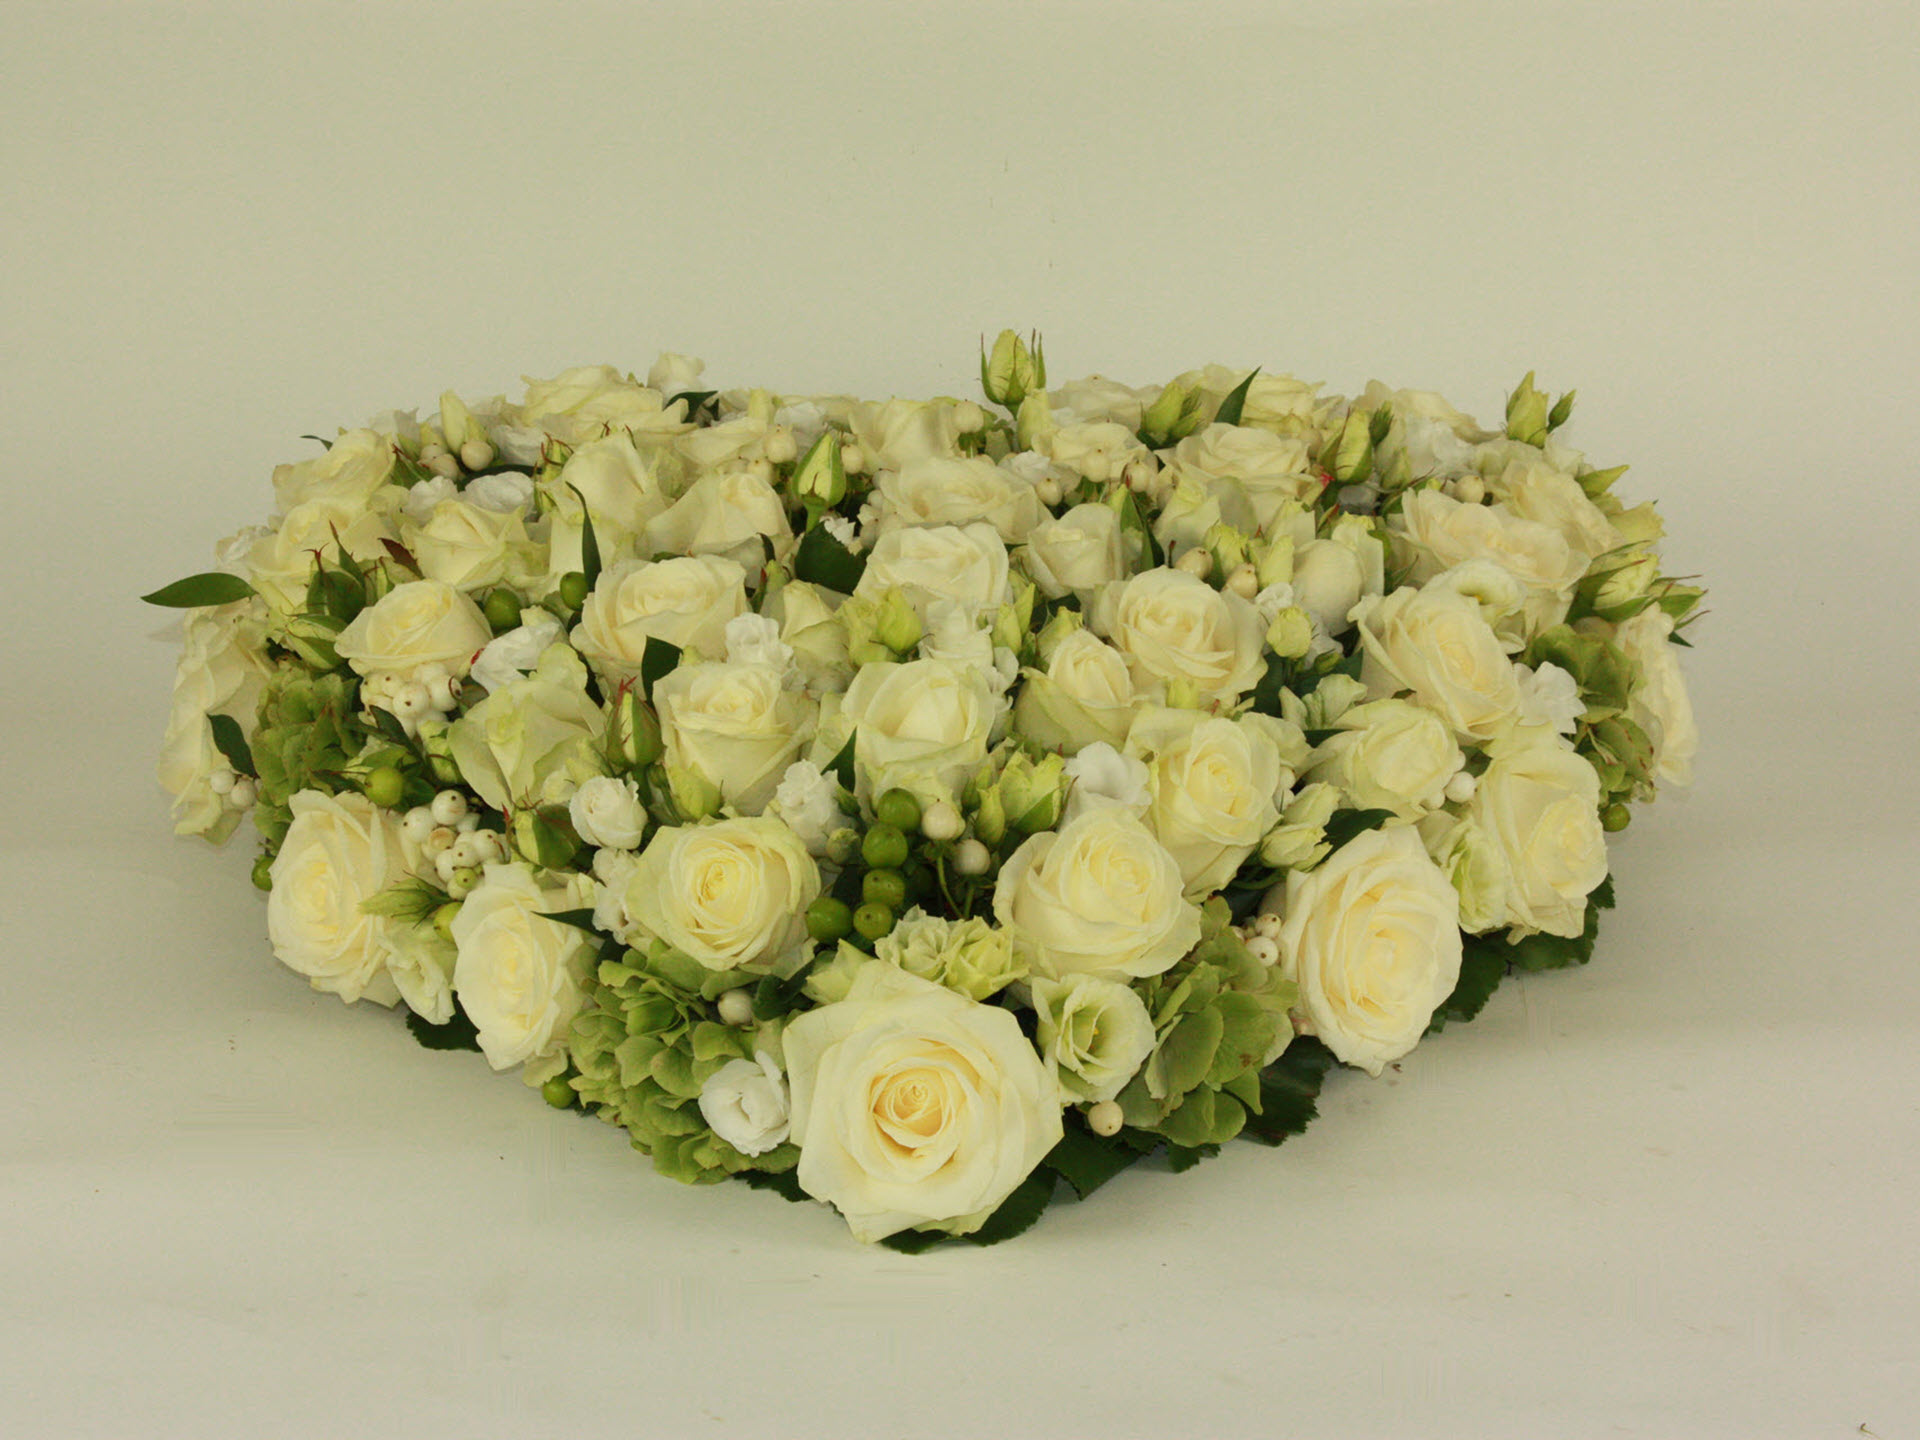 Bloemsierkunst Groeneveld bloemen uitvaart hartvorm gesloten met witte rozen